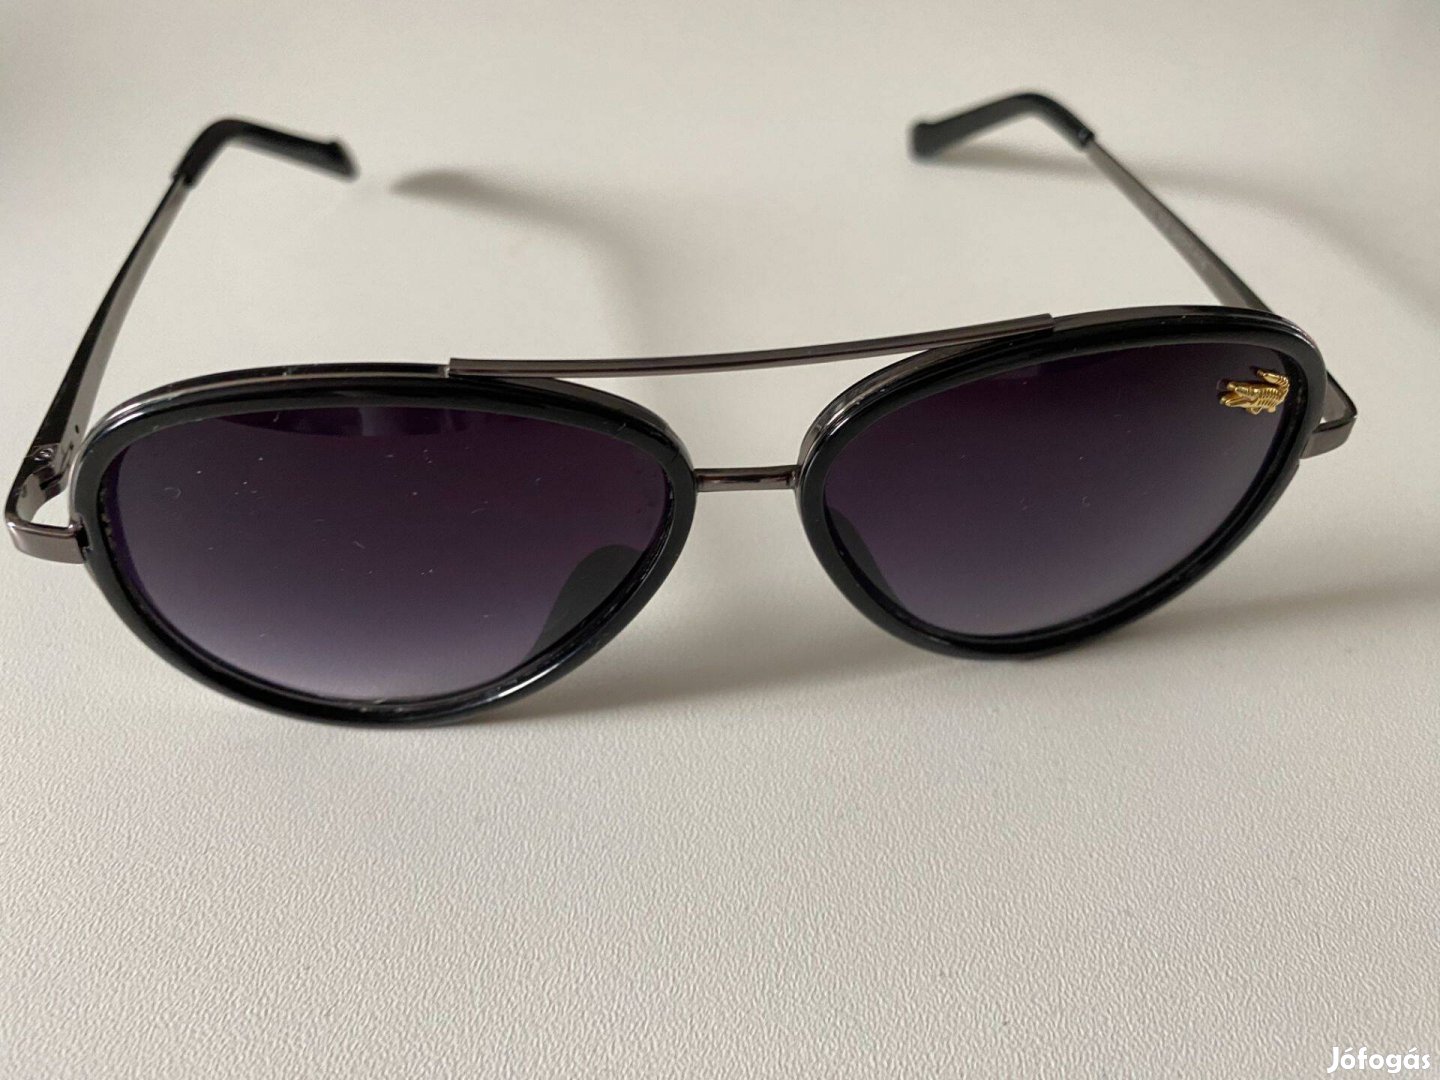 Lacoste fekete árnyalatú napszemüveg